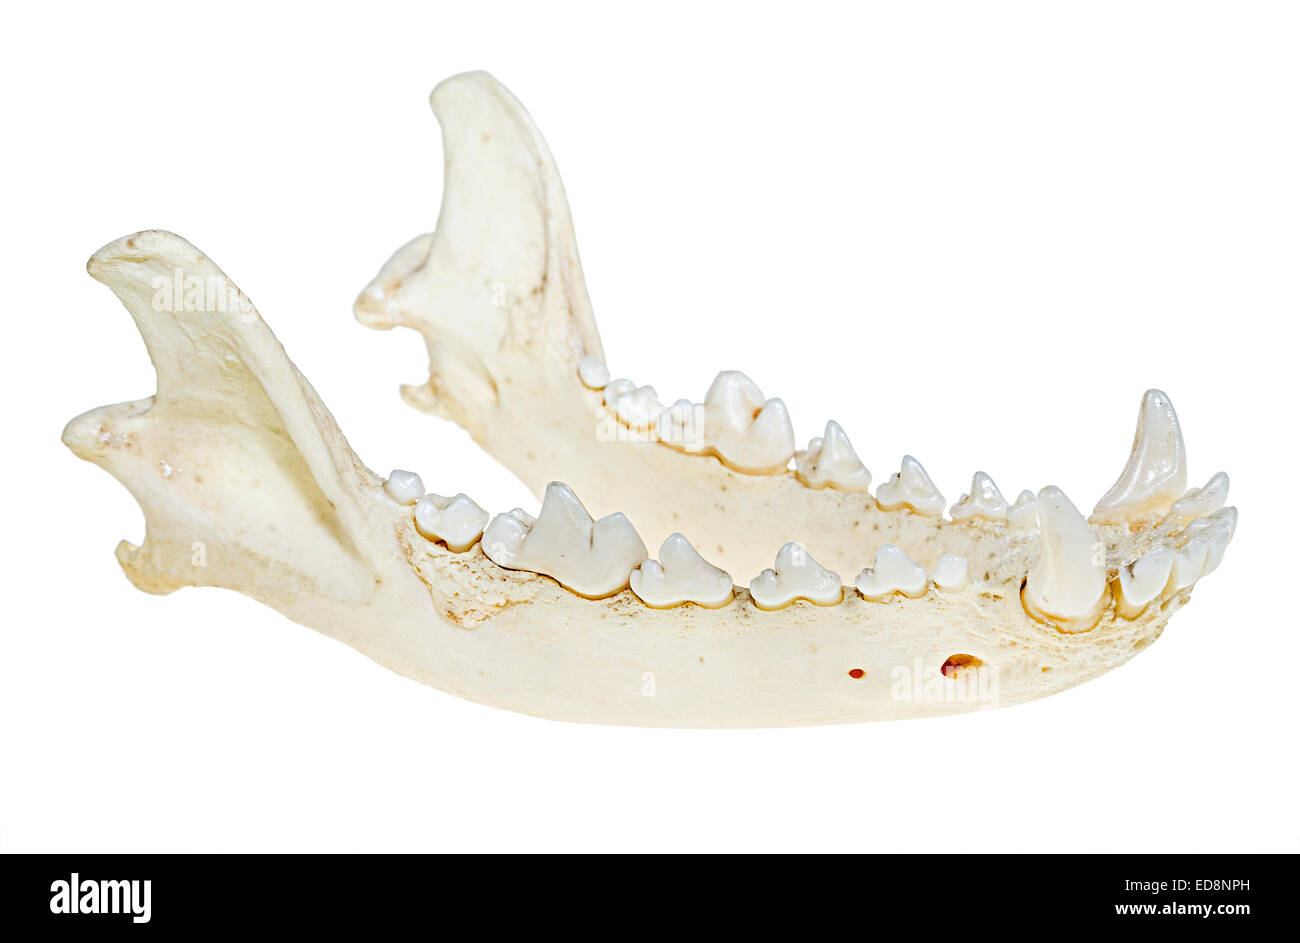 Perro cráneo mandibular, mandíbula inferior mostrando los dientes Foto de stock